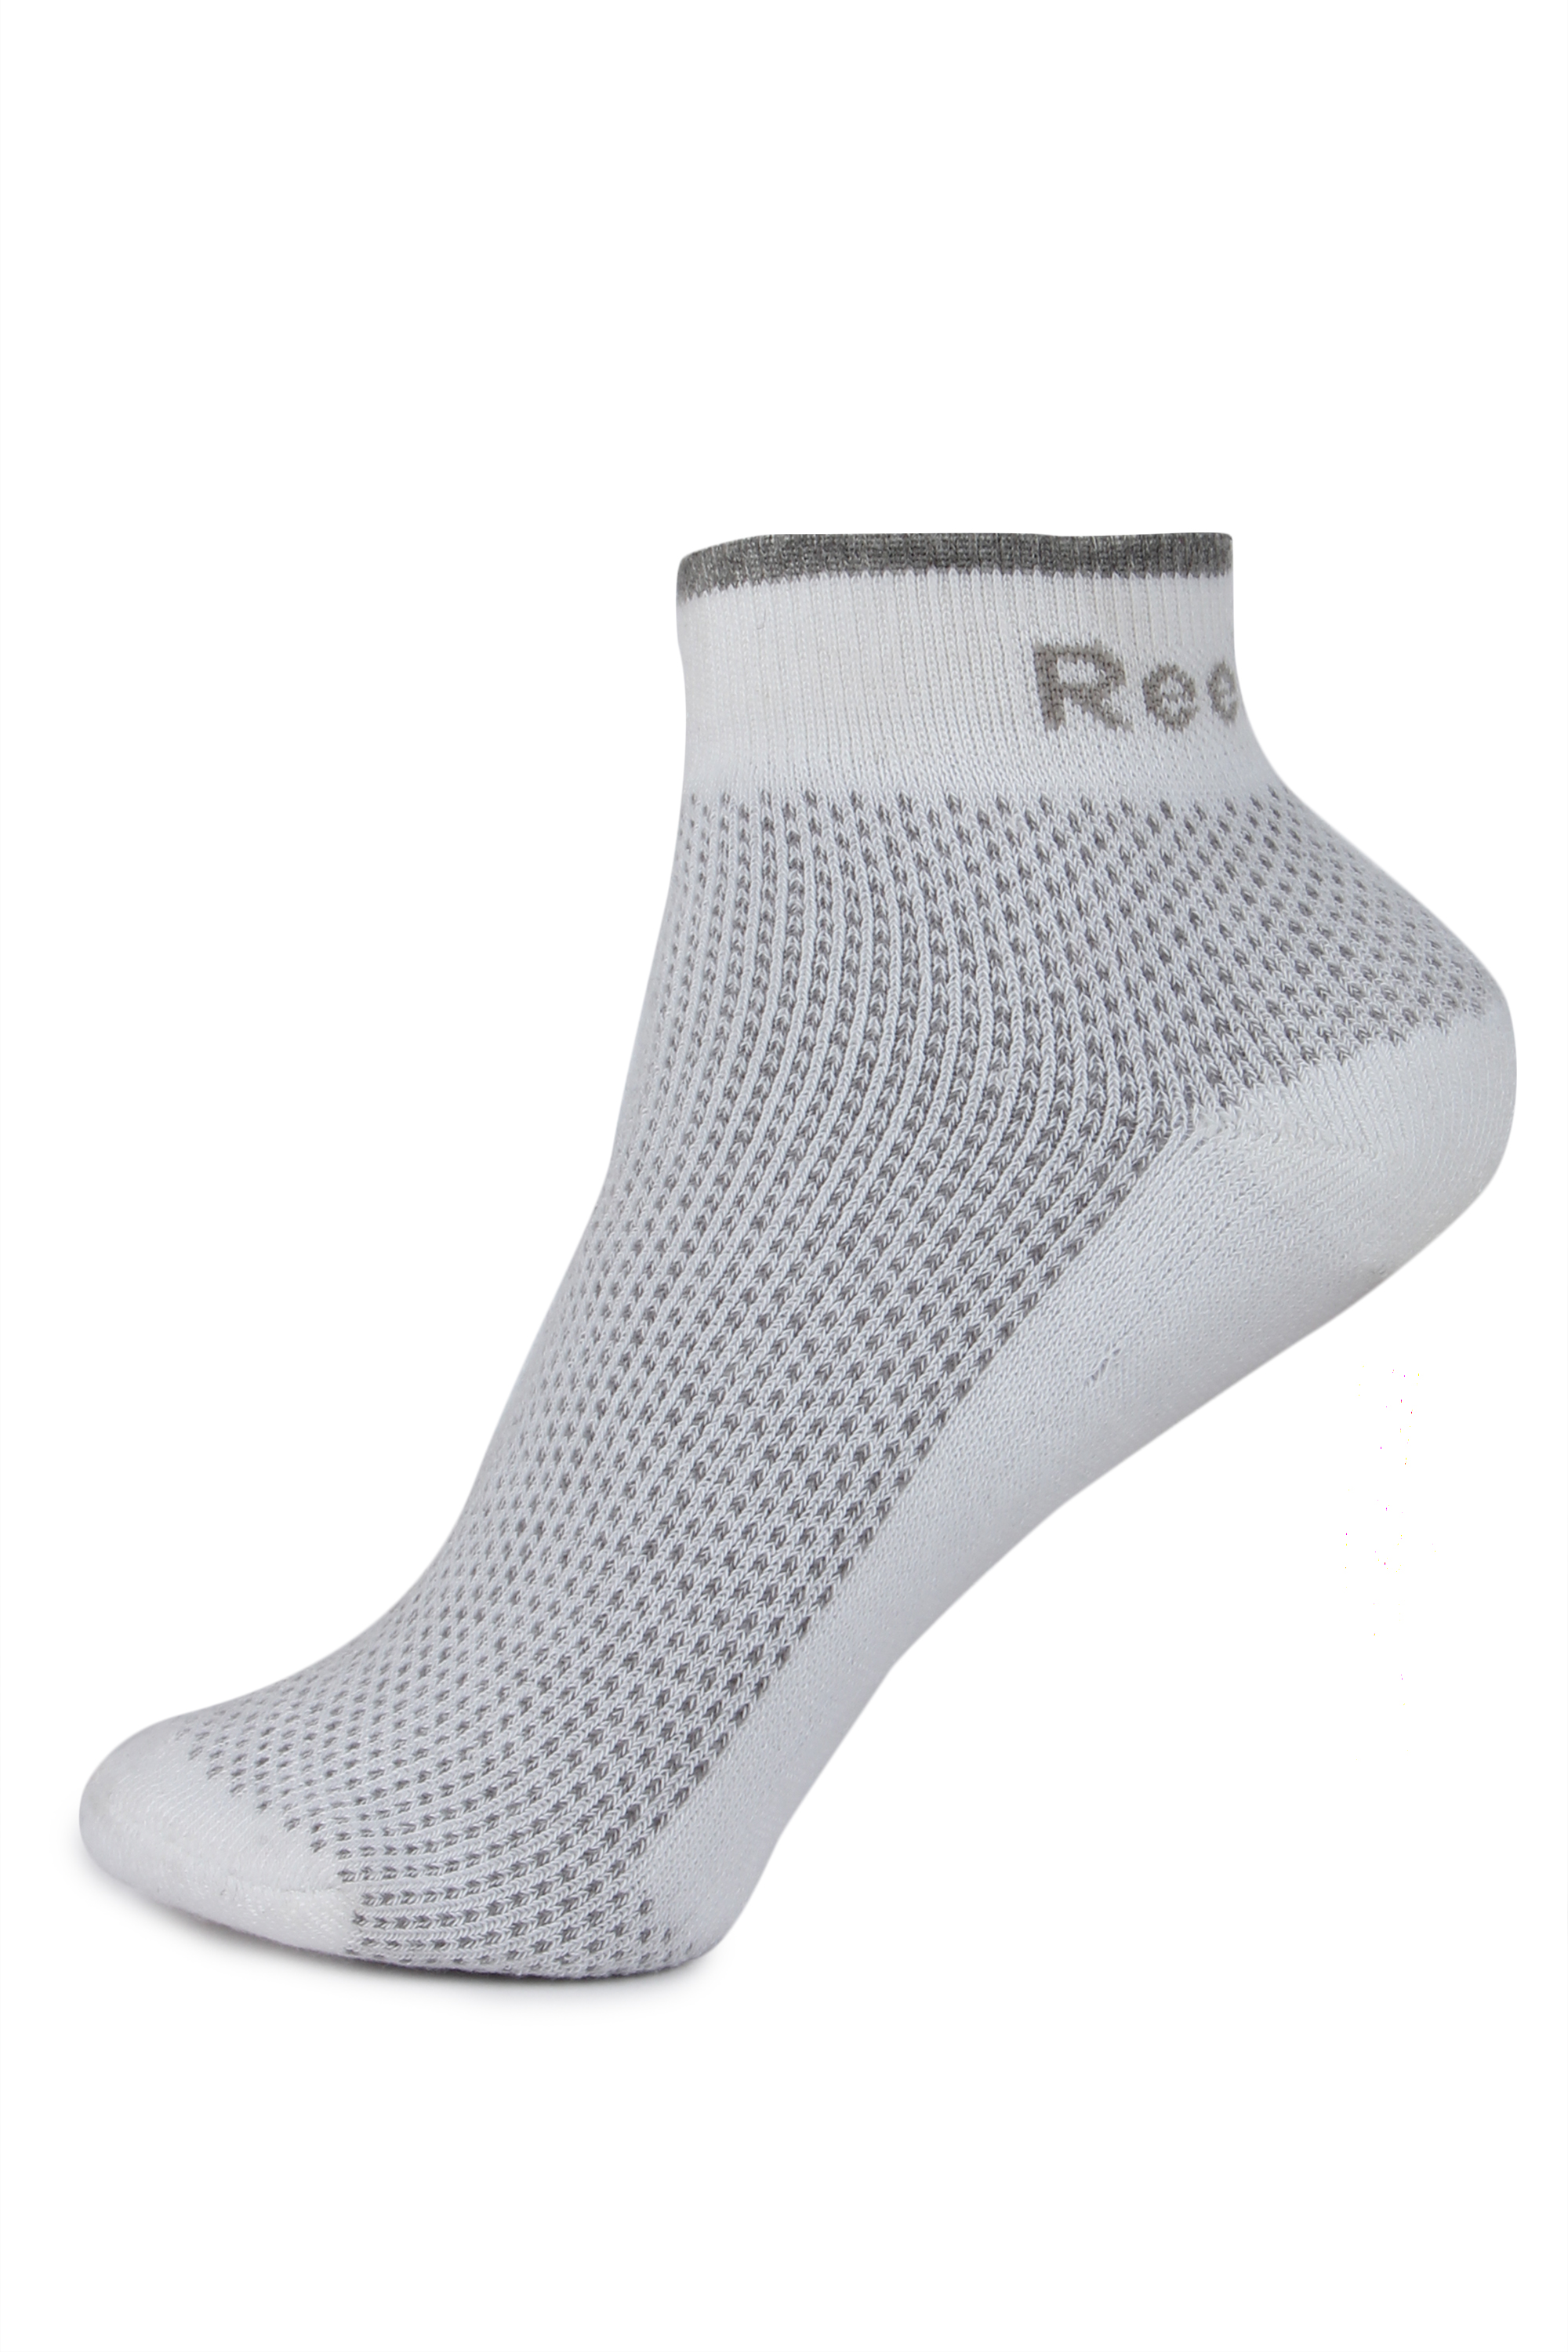 Buy Reebok Unisex Ankle Socks - Pack of 3 Online - Get 64% Off